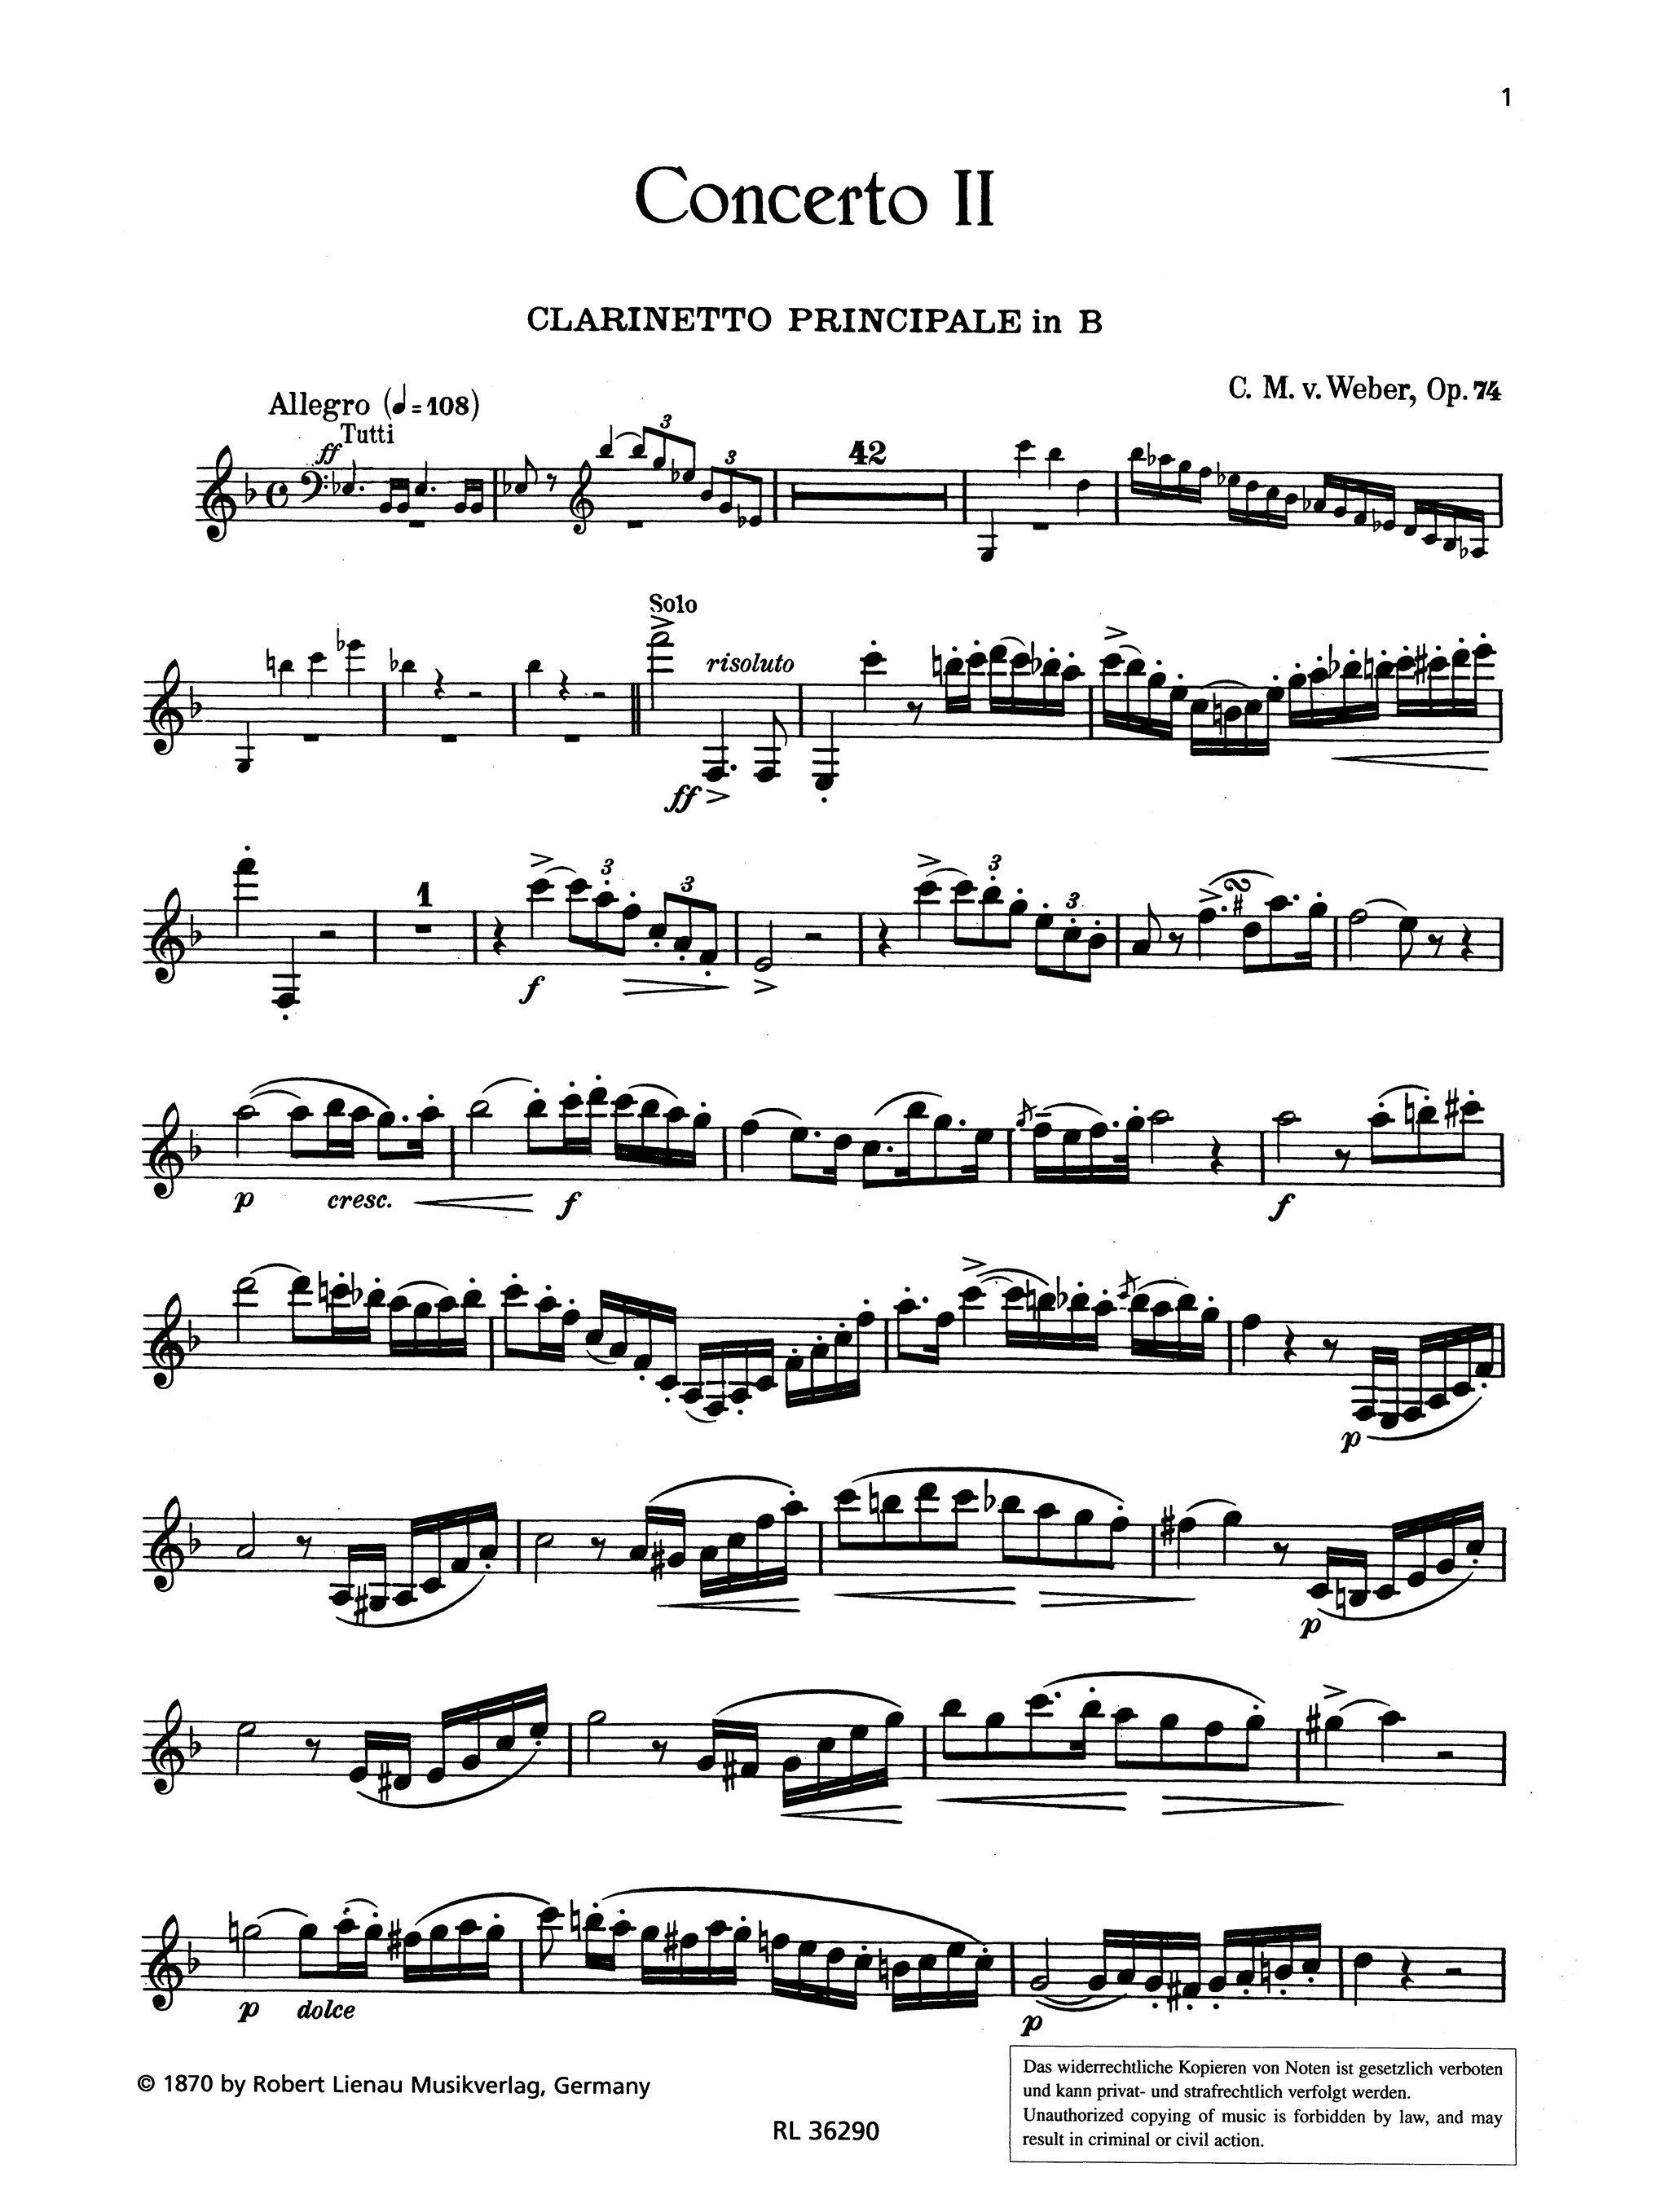 Clarinet Concerto No. 2, Op. 74 Clarinet part